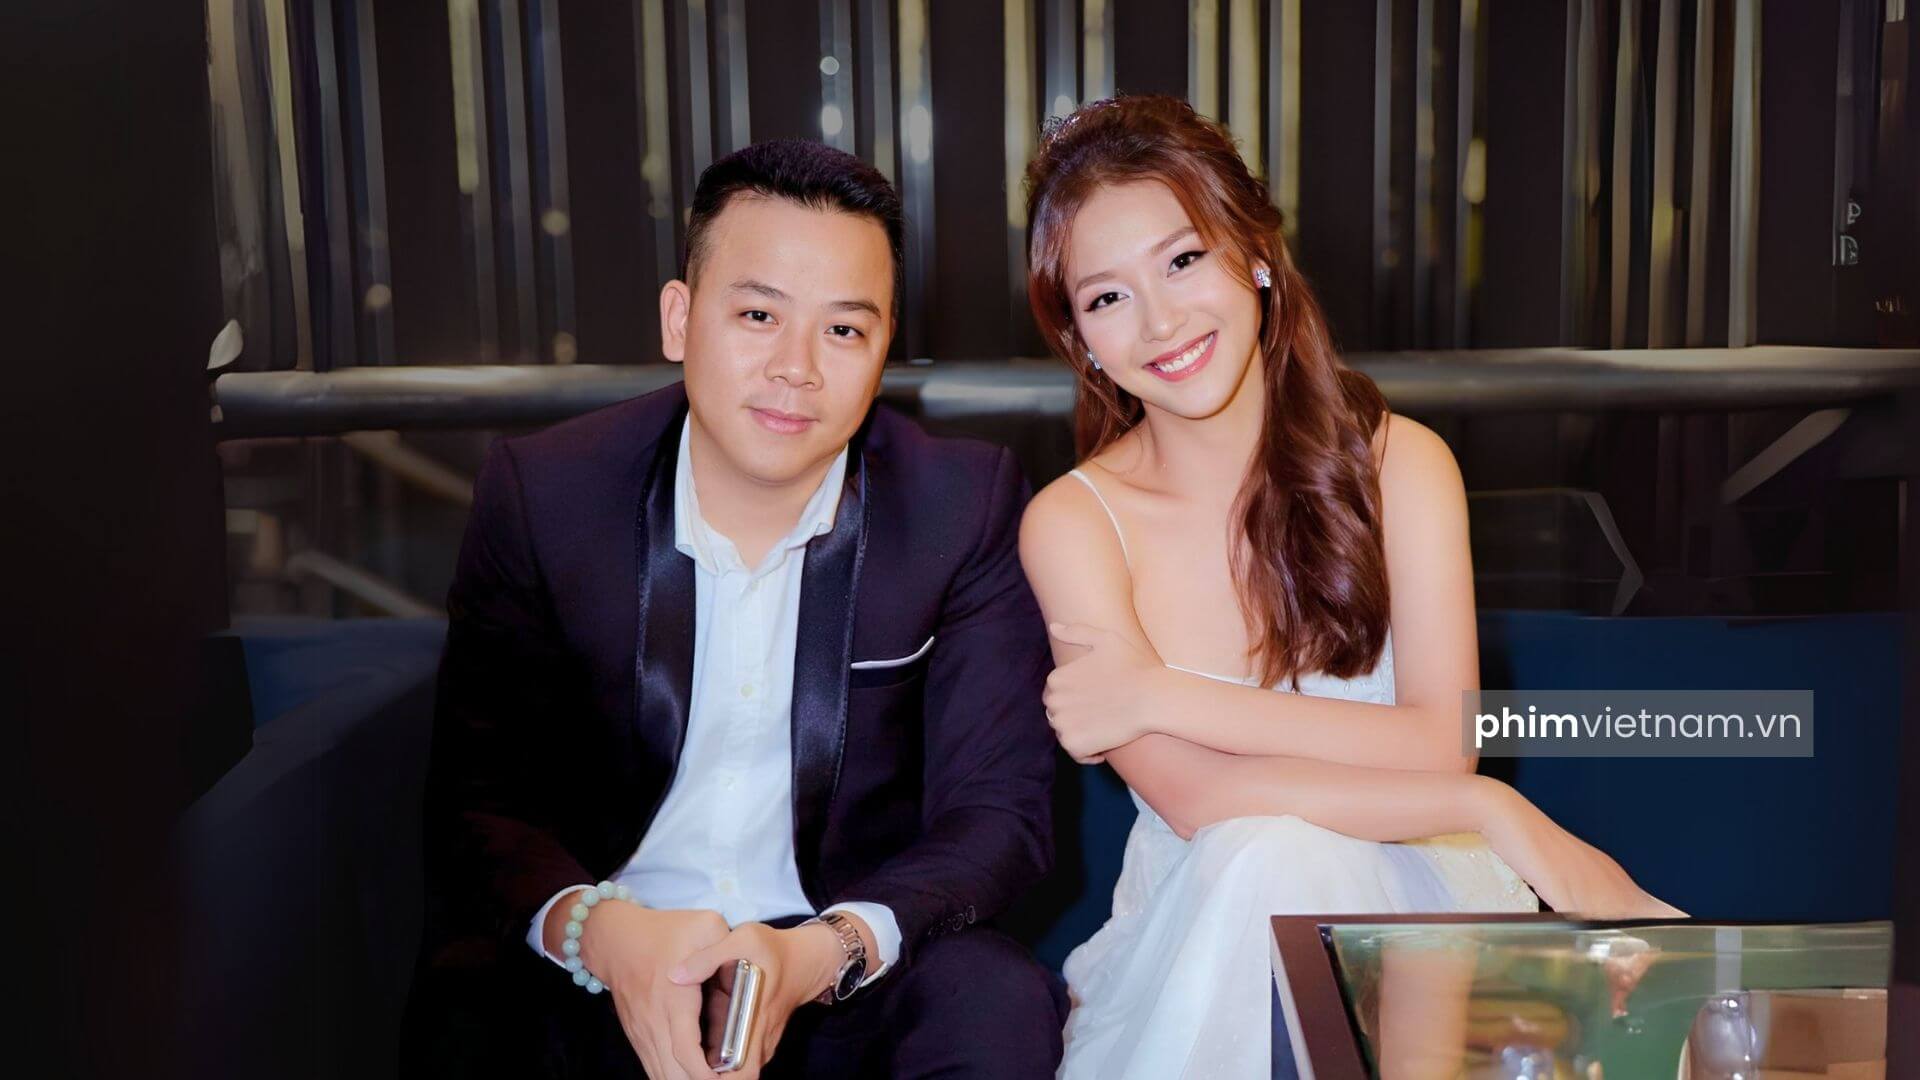 Đạo diễn Trần Bửu Lộc và diễn viên Khả Ngân tại một sự kiện